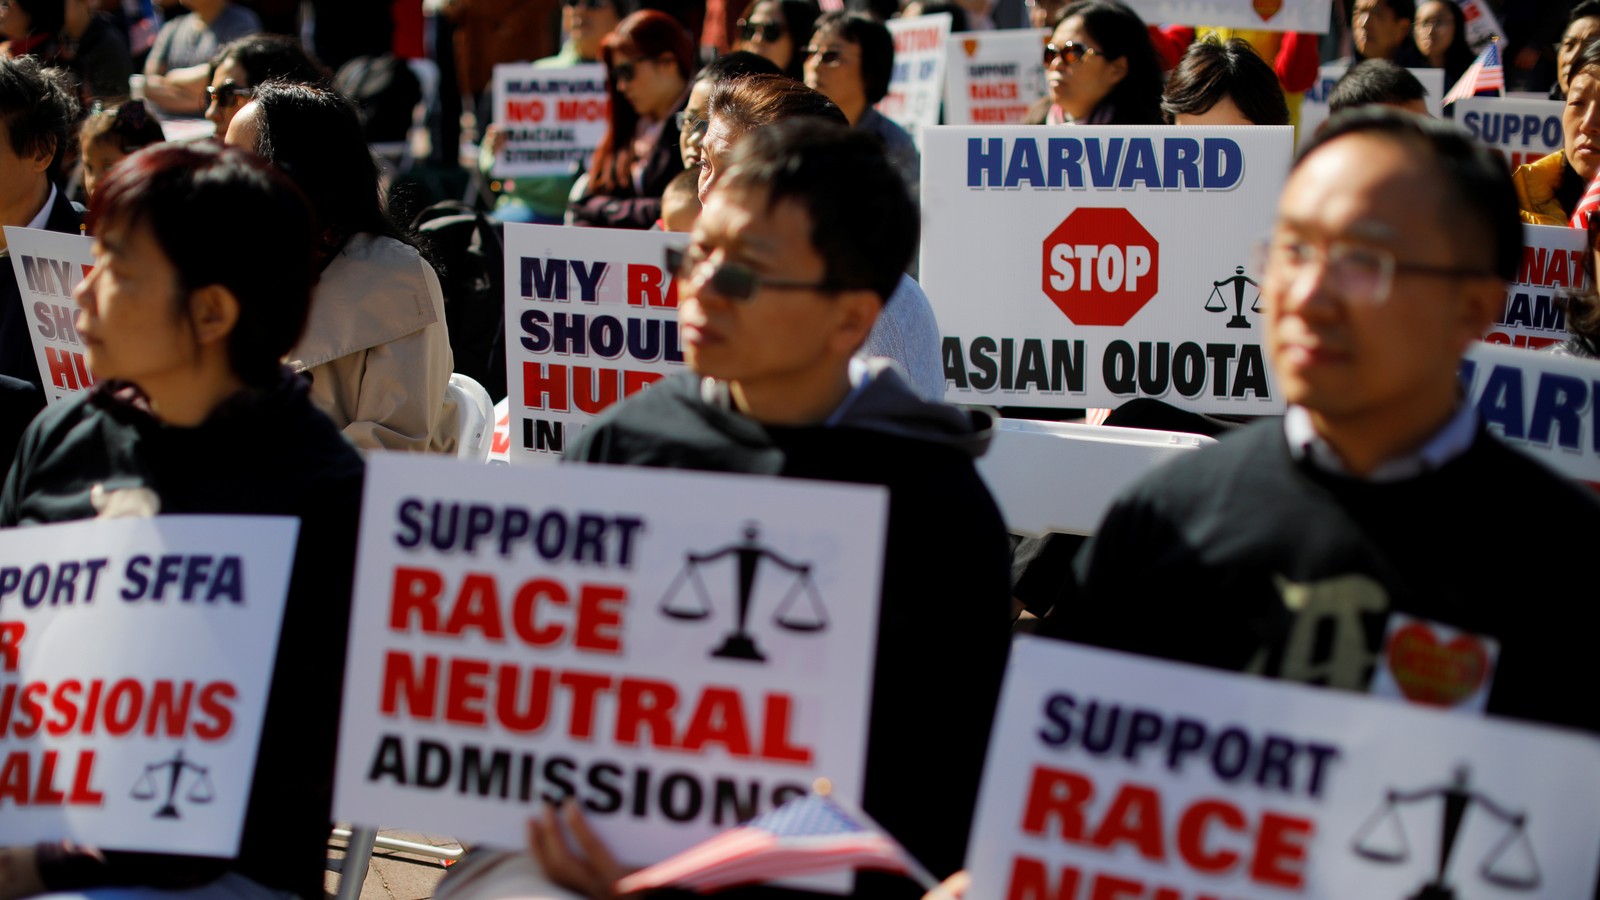 Affirmative Action Supreme Court Case Harvard Milton Horton Buzz